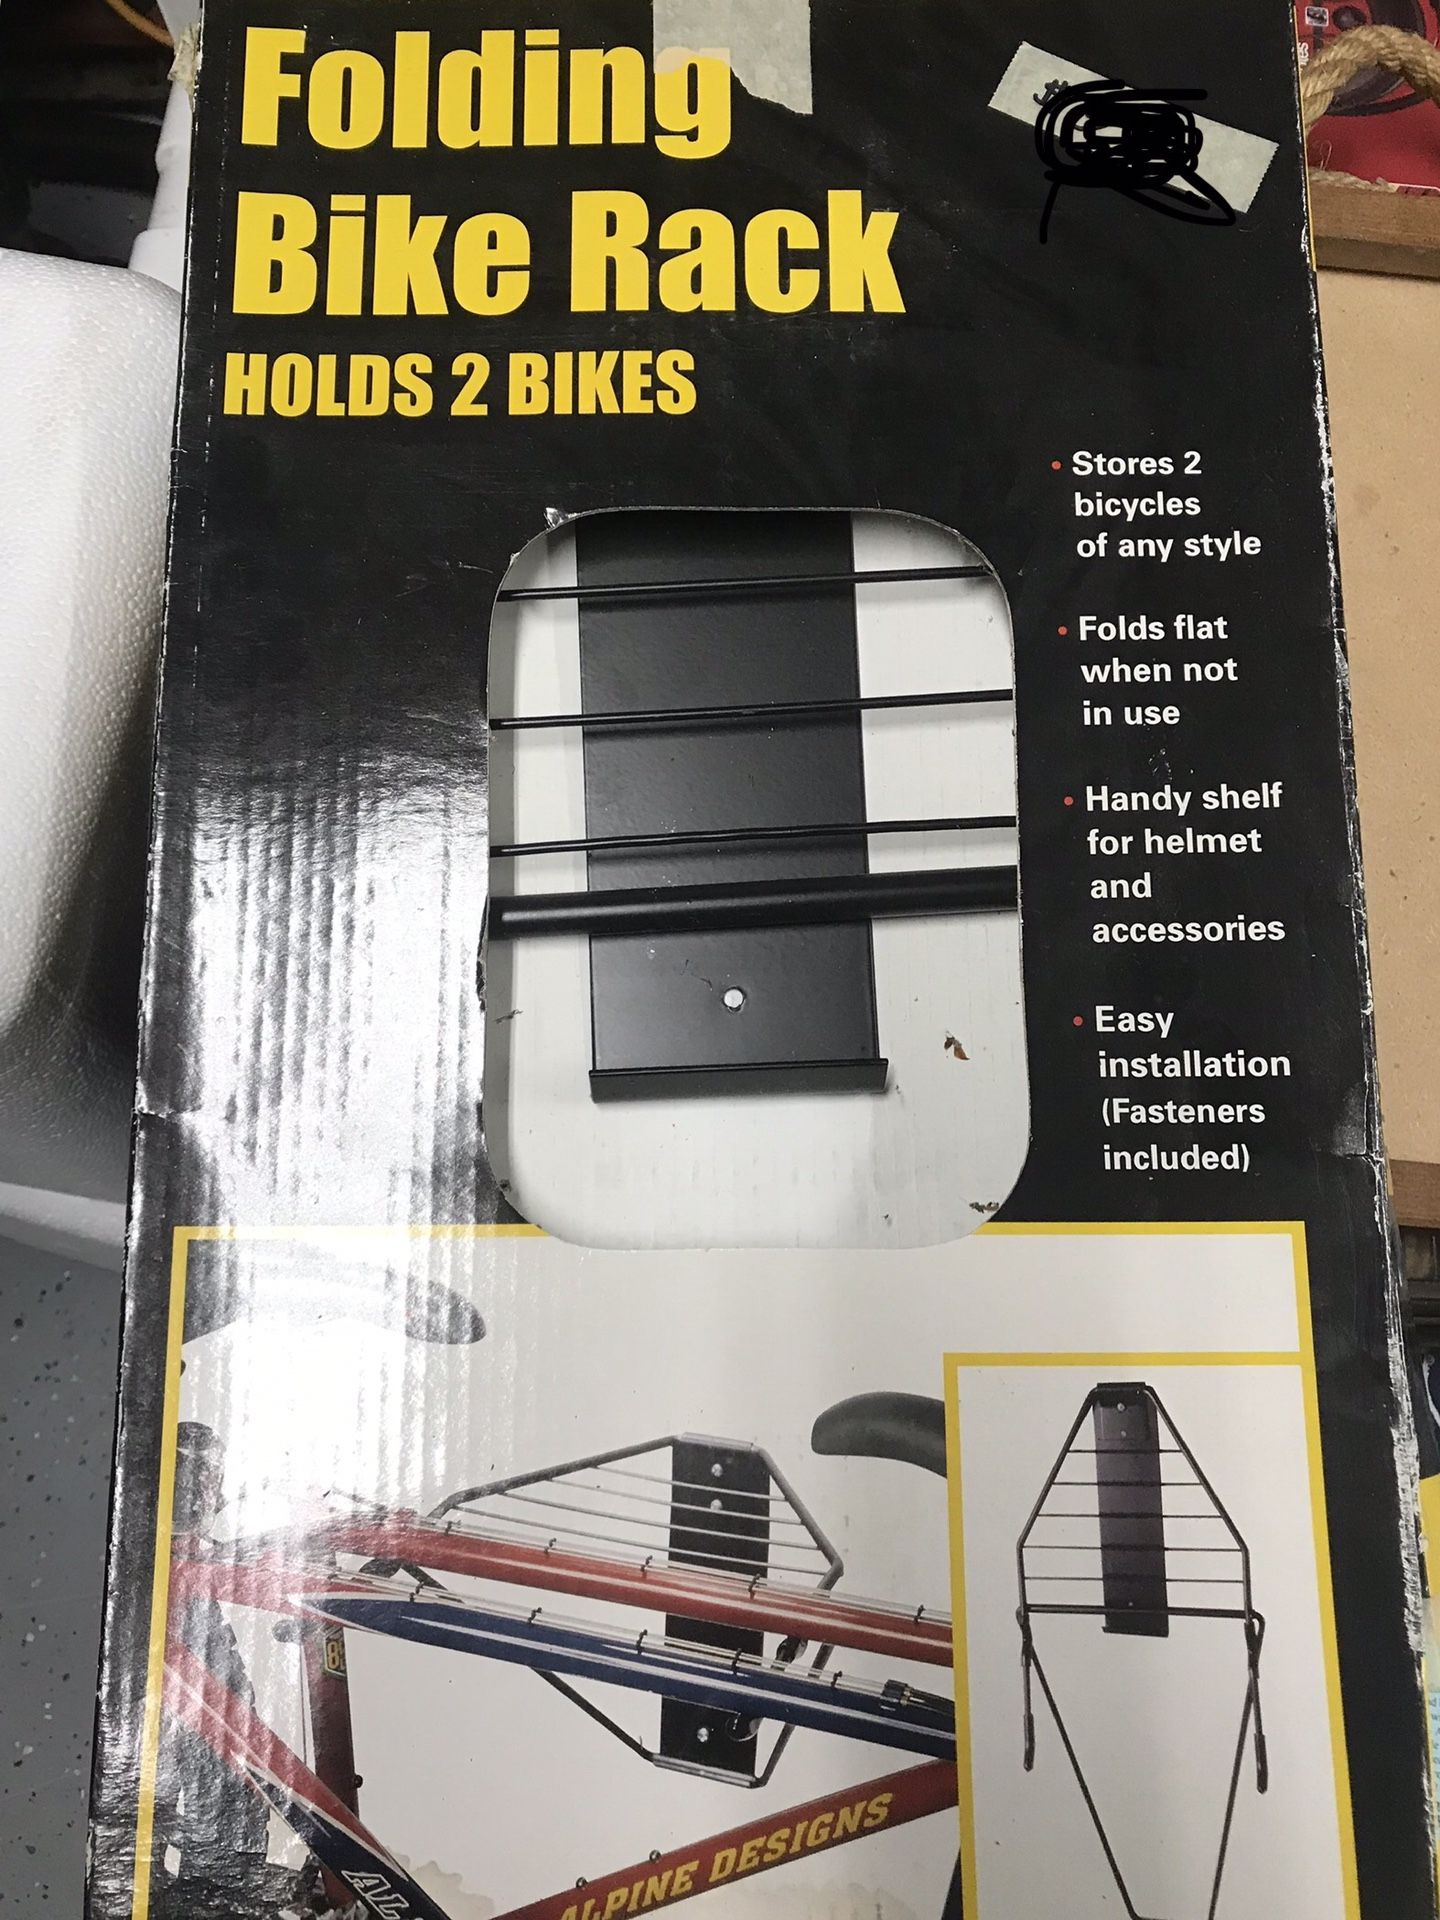 New Folding Bike Rack, holds 2 bikes